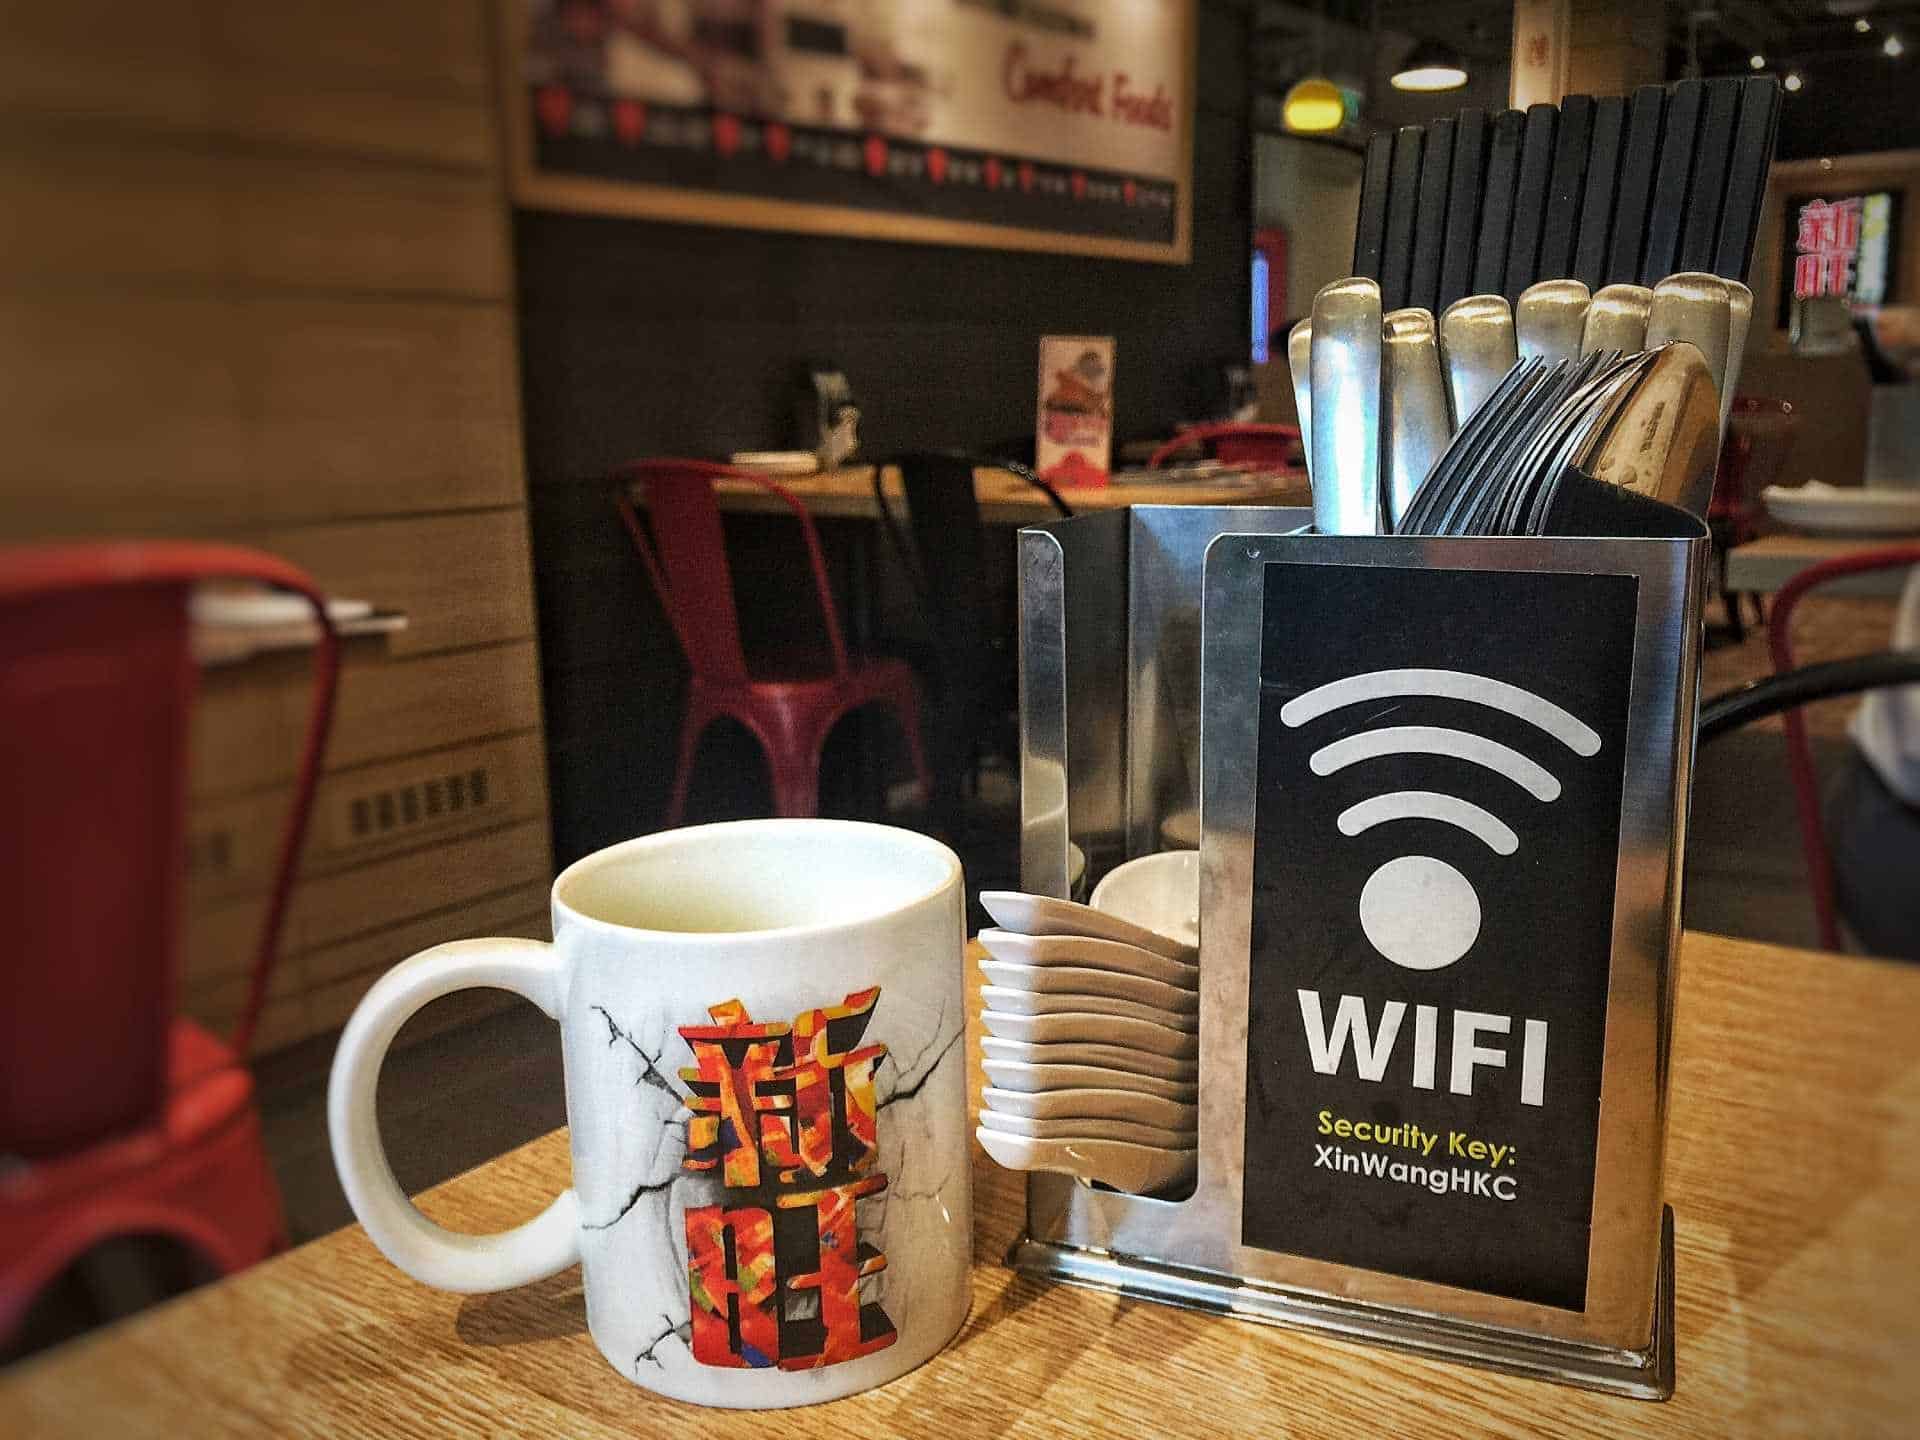 Placa sinalizando que tem Wi-Fi no estabelecimento ao lado de uma xícara sobre uma mesa.